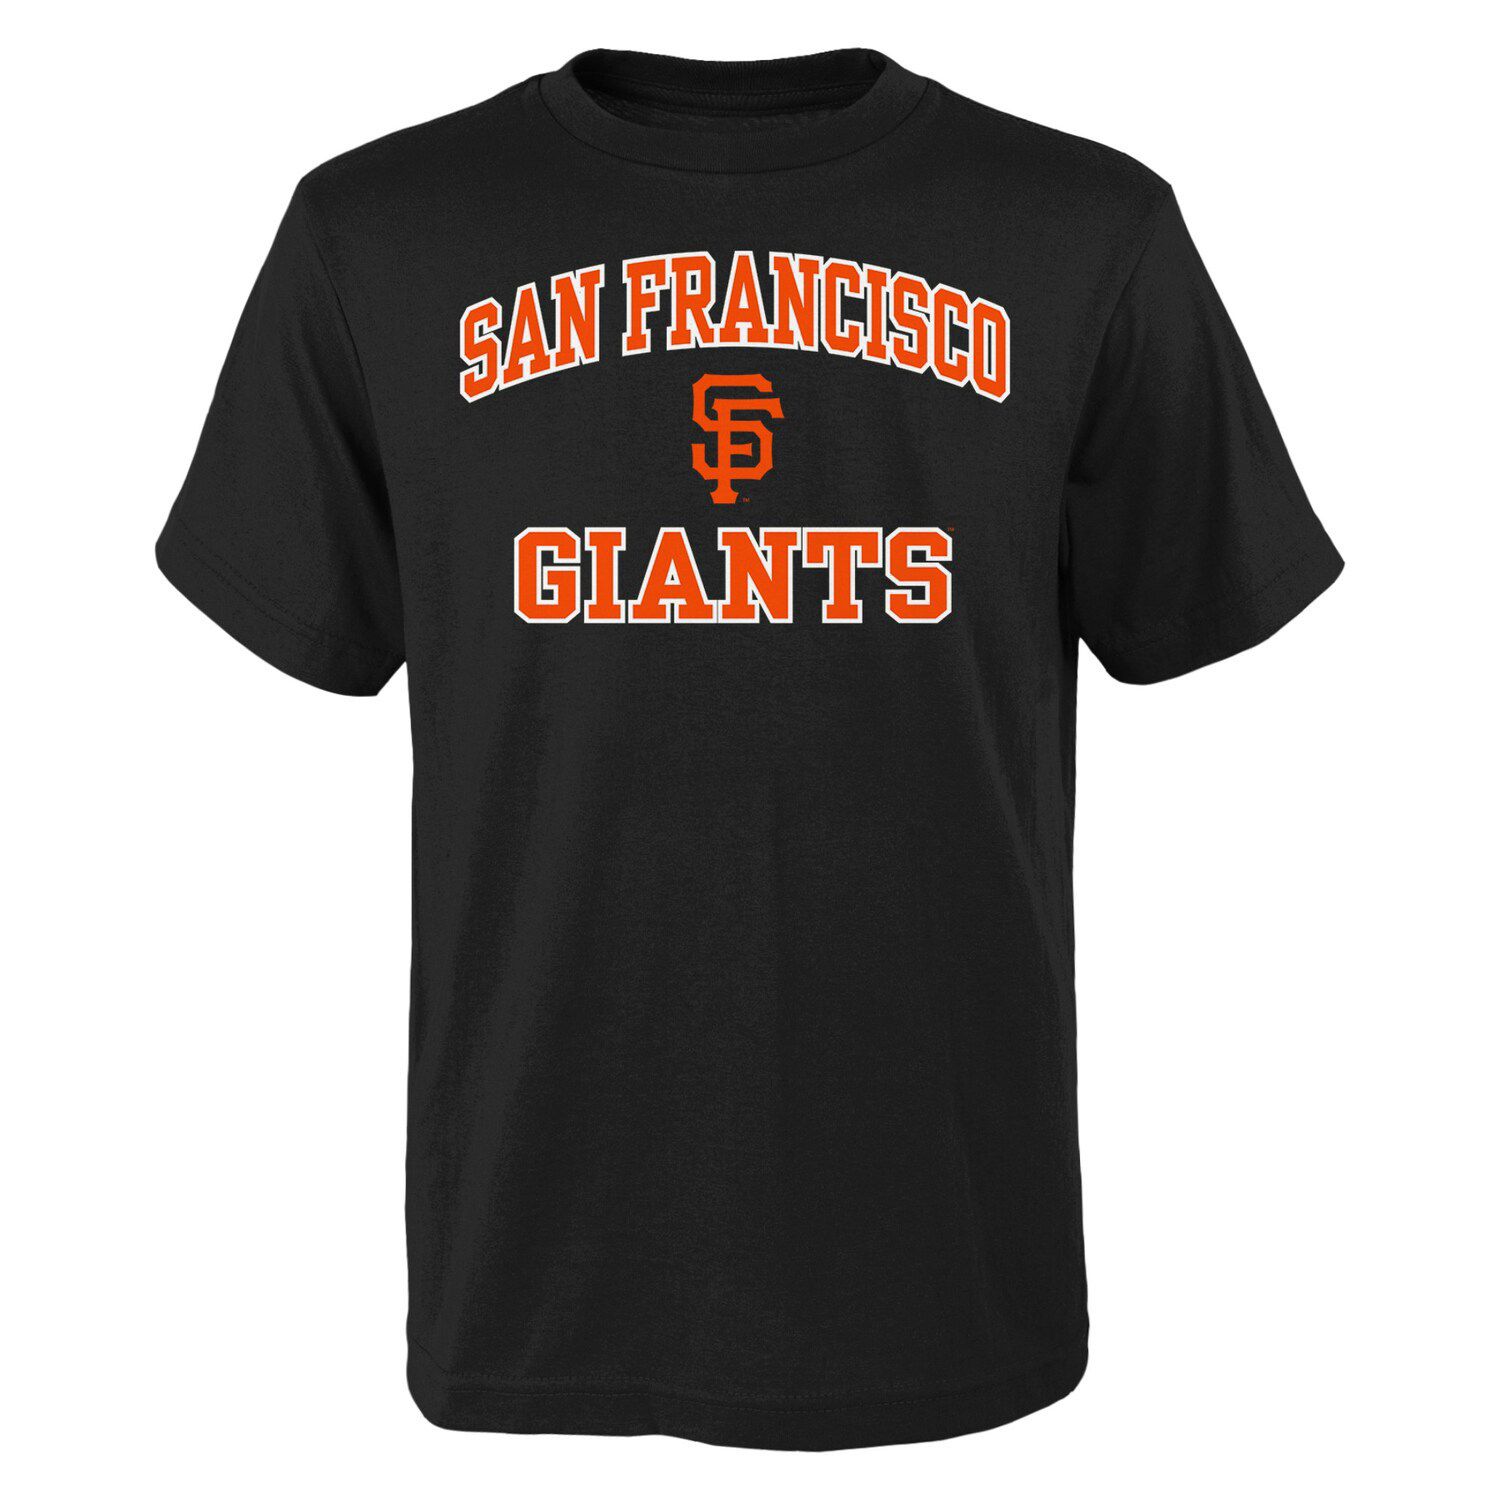 Молодежная черная футболка San Francisco Giants Heart And Soul Outerstuff